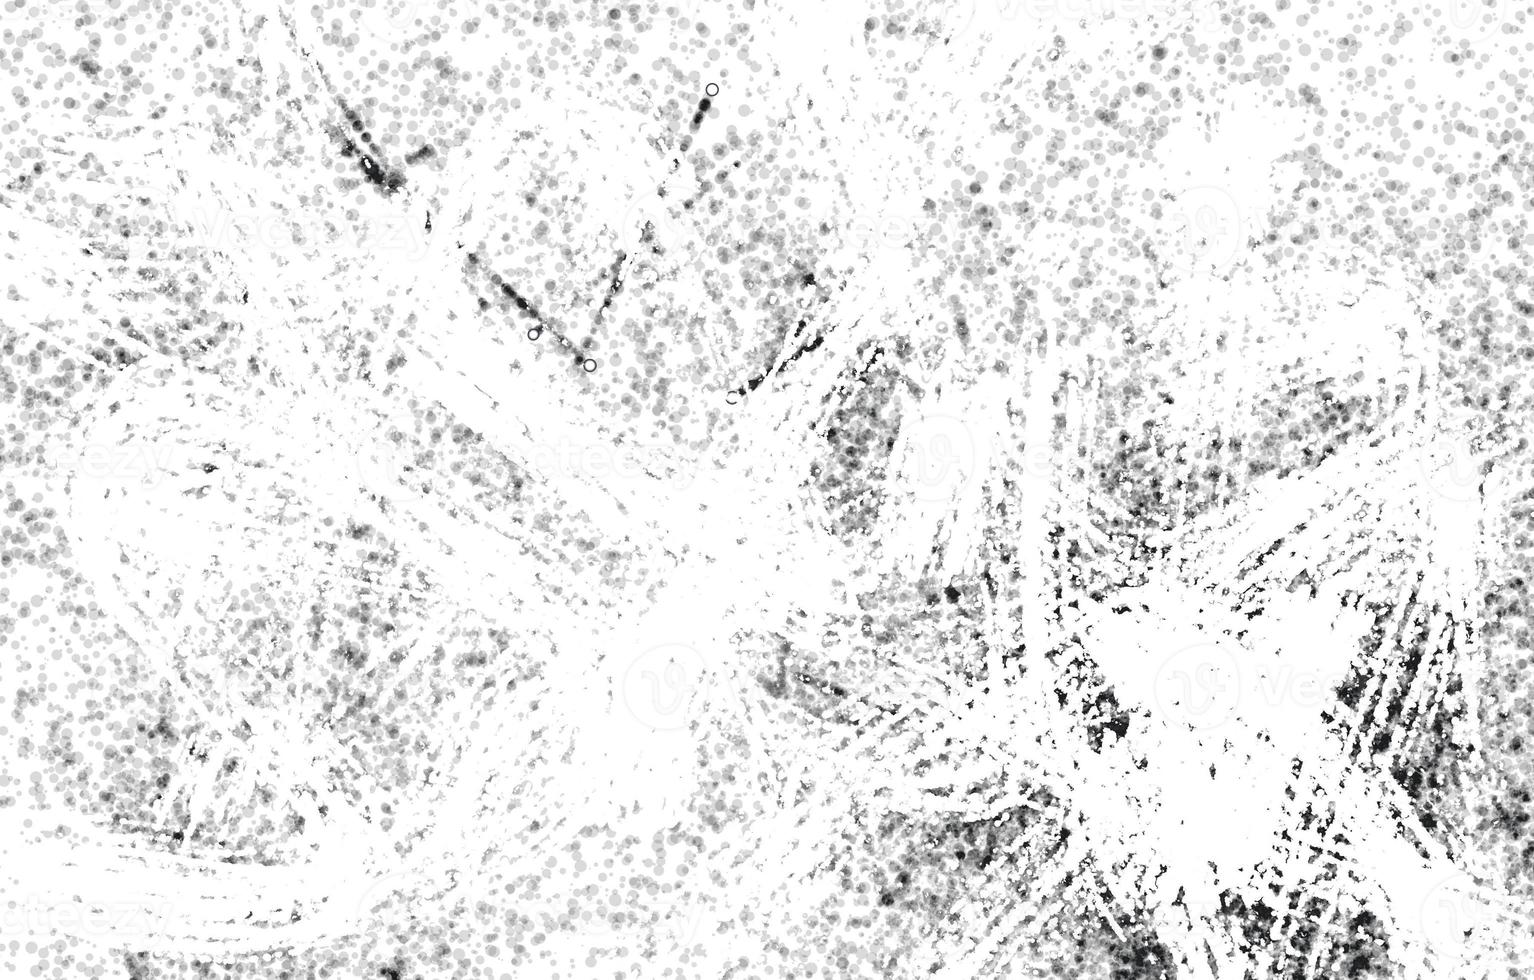 polvere e sfondi strutturati graffiati. grana di angoscia sovrapposta alla polvere, posizionare semplicemente l'illustrazione su qualsiasi oggetto per creare un effetto sgangherato. foto